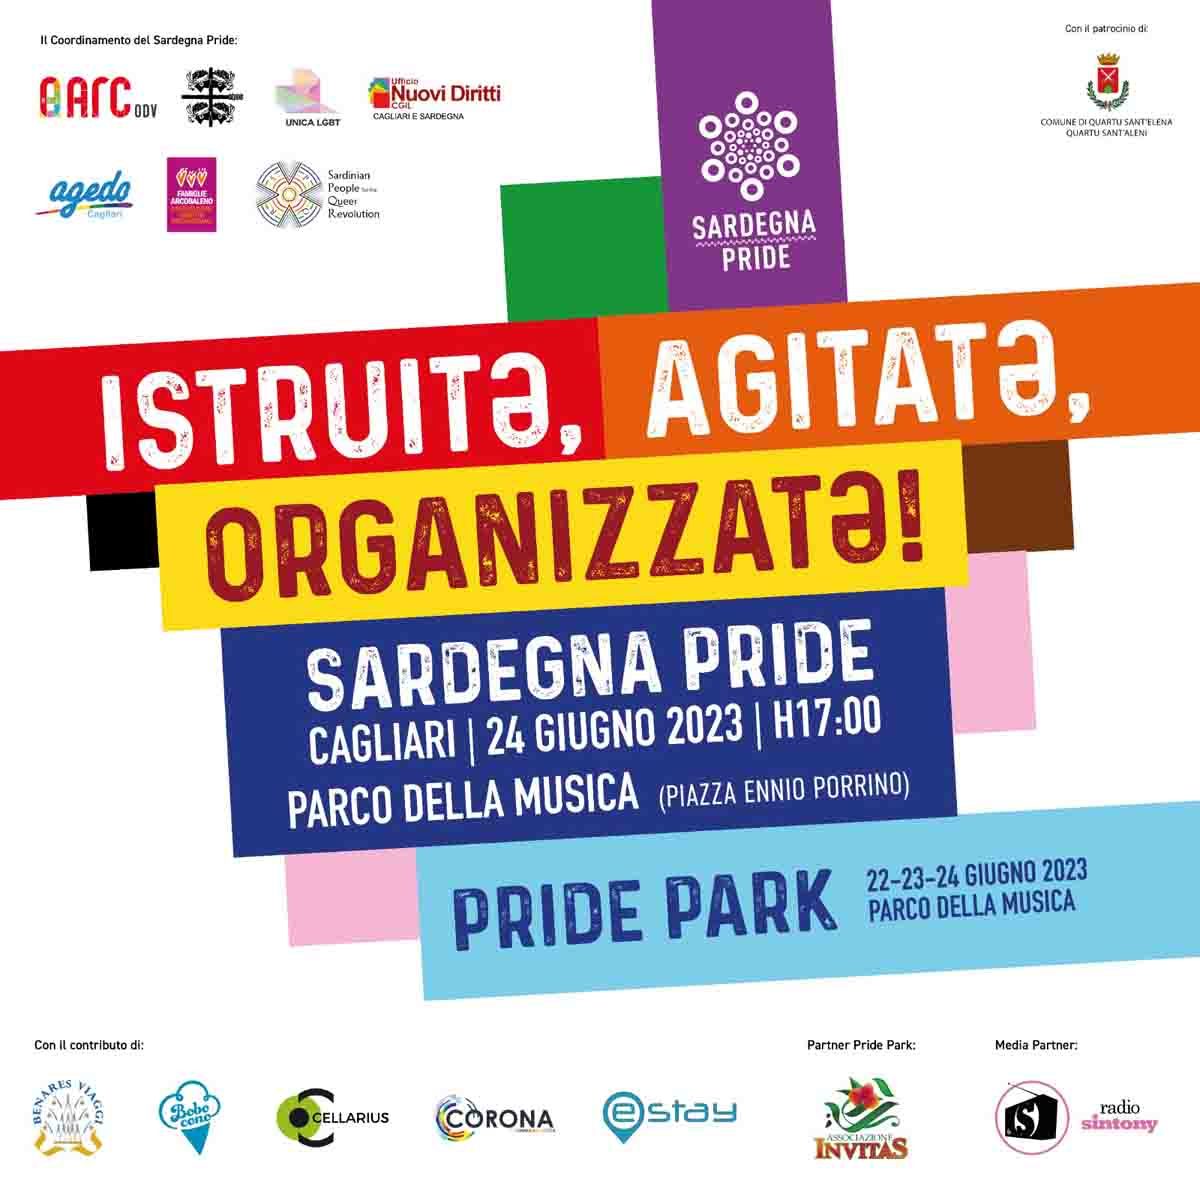 Tuttə a Cagliari!
#Pride
#Sardegnapride